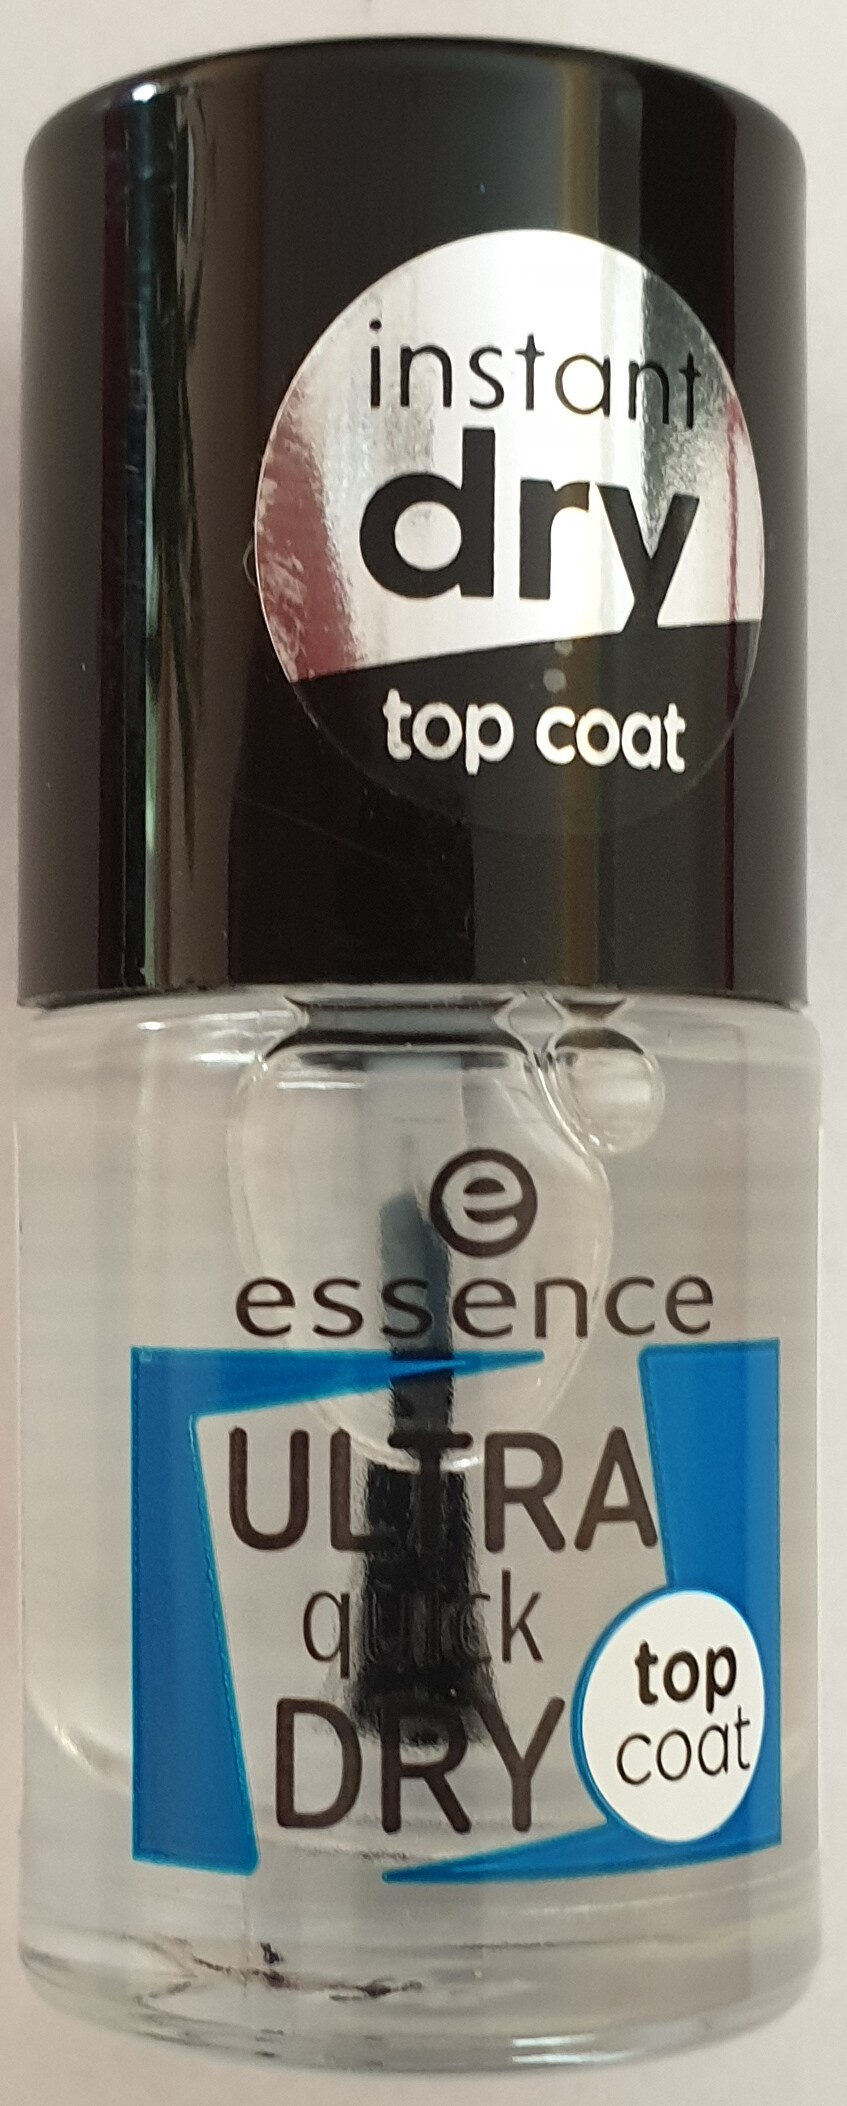 Ultra quick dry top coat - Produkt - de